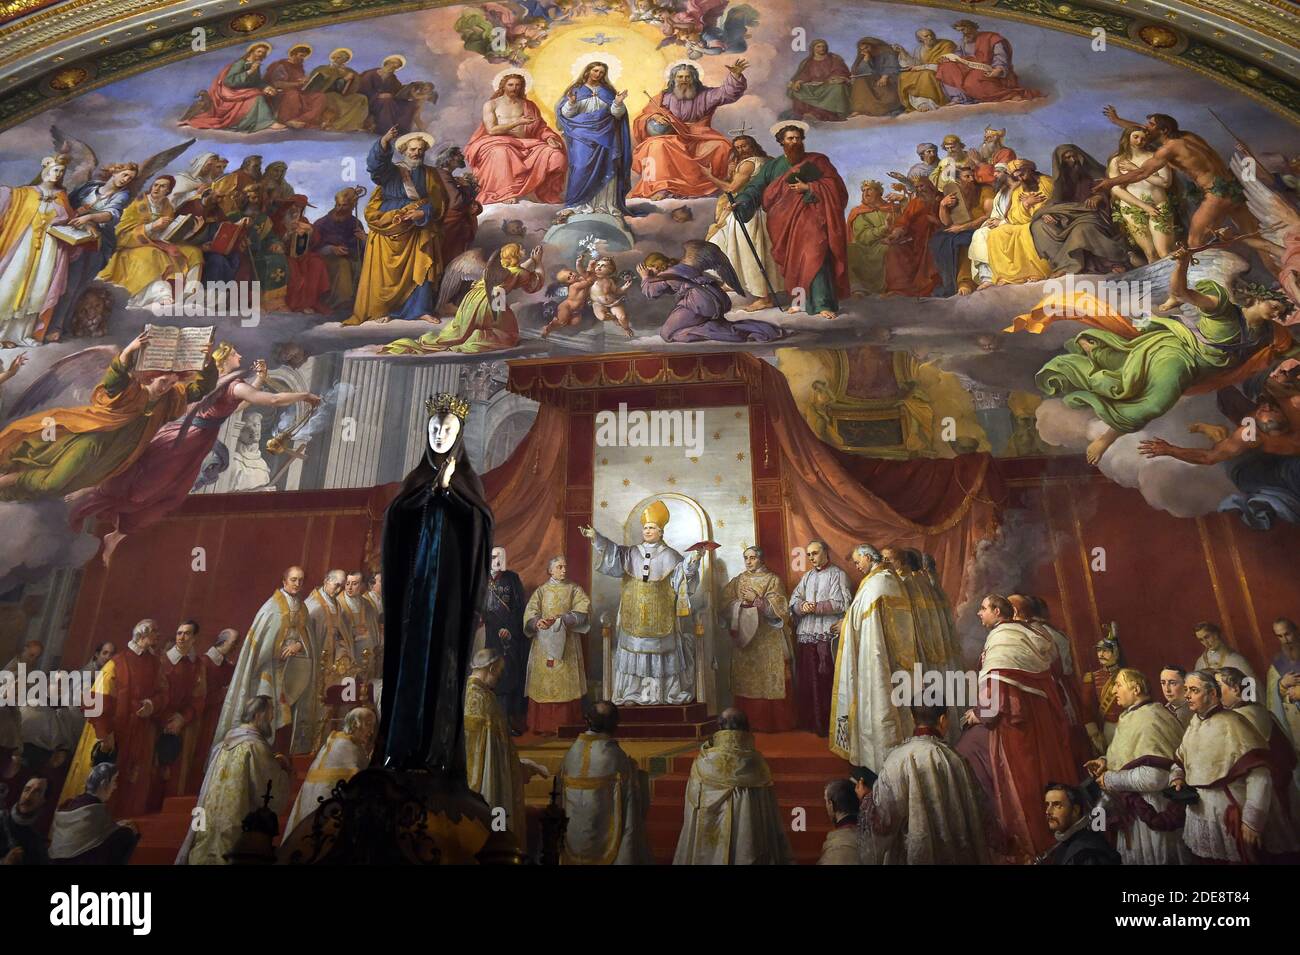 Zimmer der Unbefleckten Empfängnis (Sala dell'Immacolata)Gemälde : "Die Verkündigung des Dogmas von der Unbefleckten Empfängnis" von Francesco Podesti, (1800-1895) nach der Verkündigung des Dogmas von der Unbefleckten Empfängnis durch Papst Pius IX., die am 8. Dezember 1854 stattfand, beschließt der Papst, das Ereignis mit einem Freskenzyklus zu feiern. Der große Raum neben den Raphael Rooms wurde gewählt, und die Aufgabe wurde Francis Podesti zugewiesen. Der Künstler arbeitete in der auftragsbearbeitung von 1856 bis 1865. Vatikanische Museen (Sala dell'Immacolata - Raum der Unbefleckten Empfängnis) Vatikan, 2018. Stockfoto